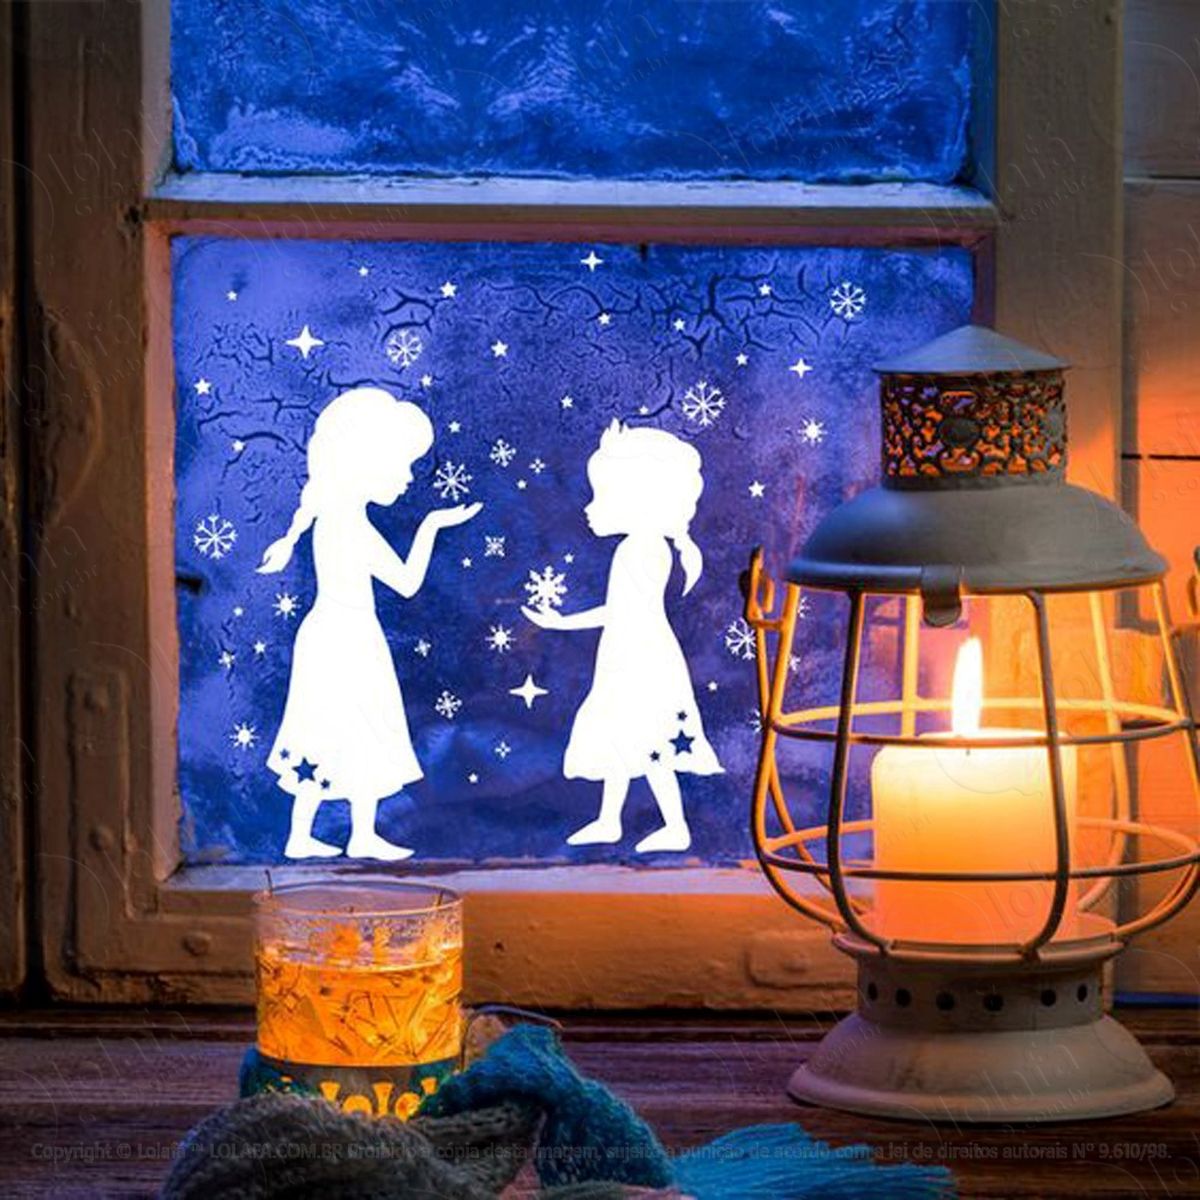 princesinhas na neve adesivo de natal para vitrine, parede, porta de vidro - decoração natalina mod:302